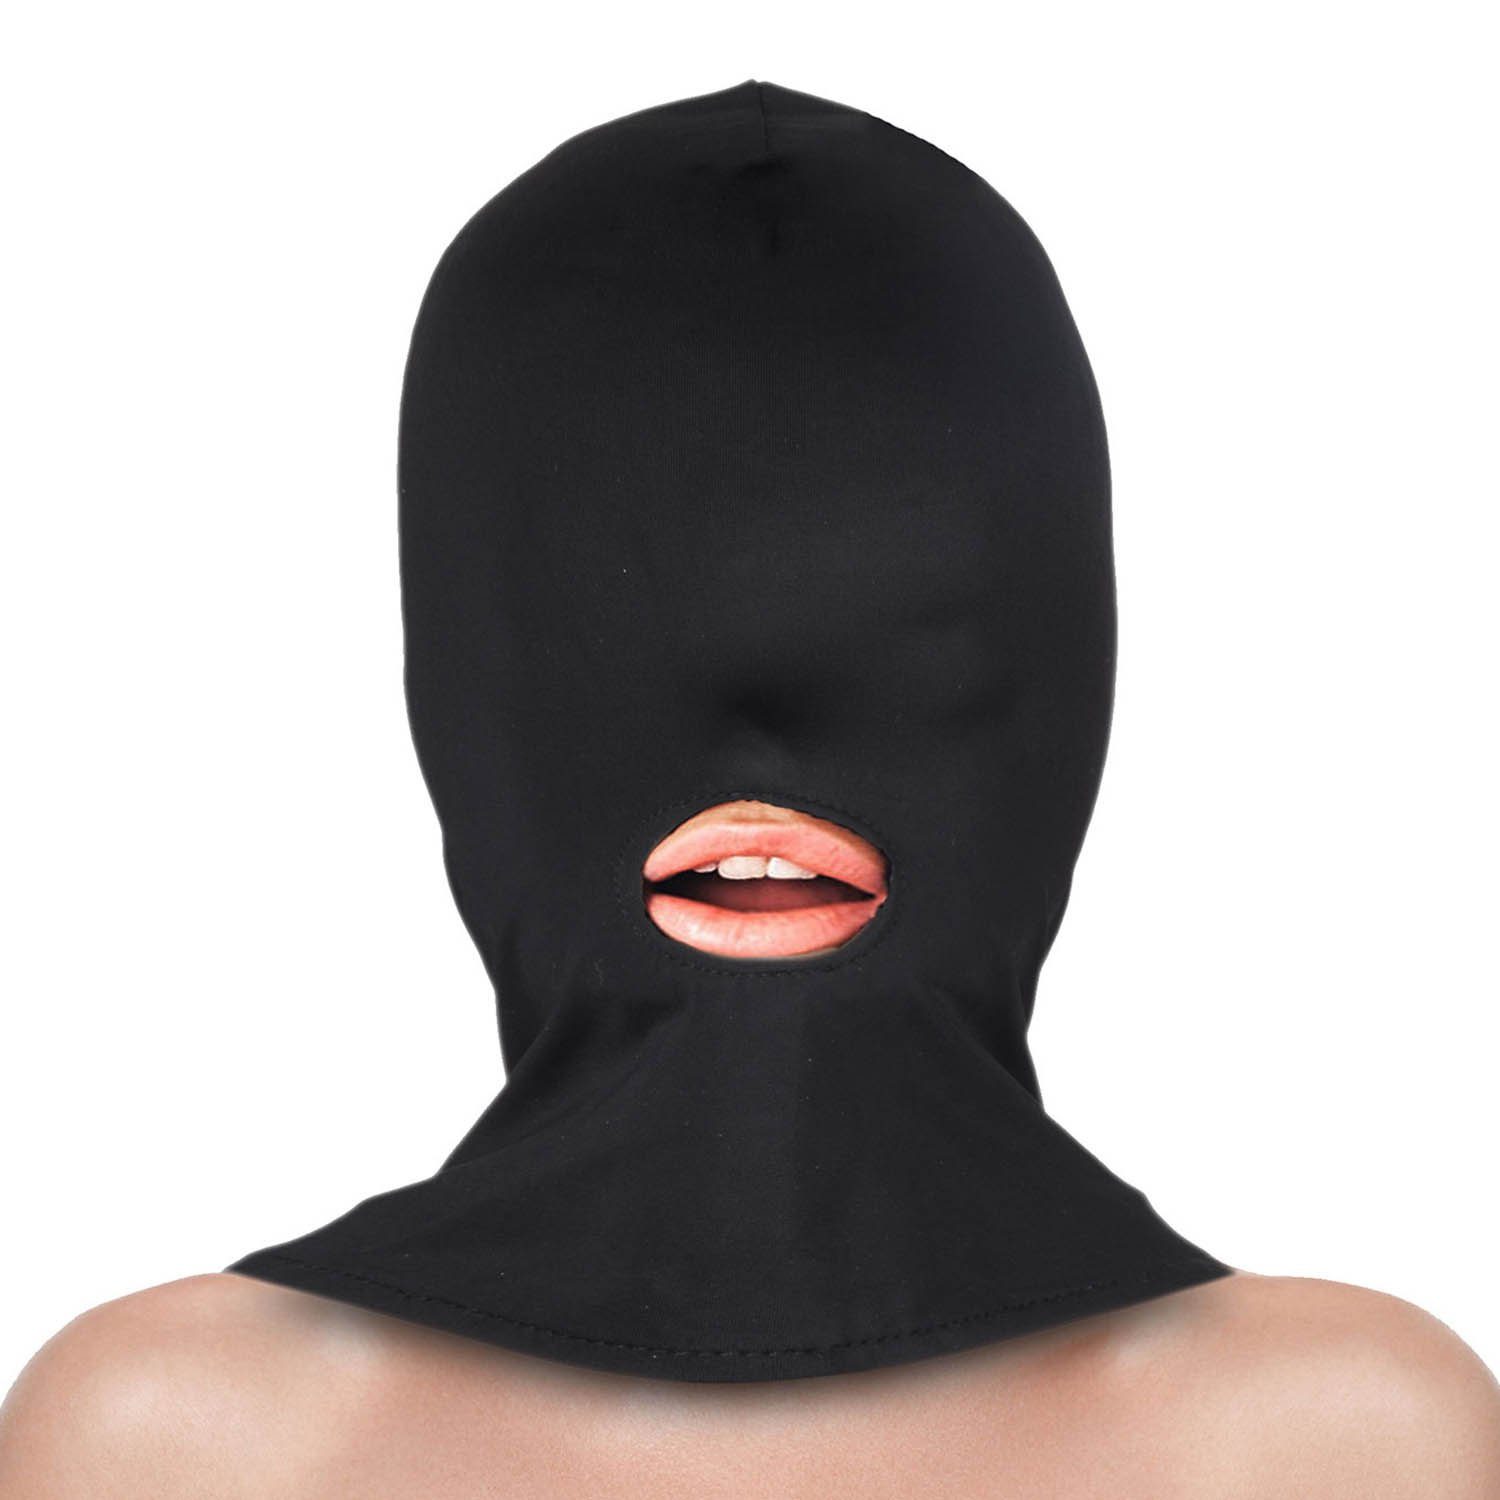 Goods+Gadgets Erotik-Maske Erotische Fetisch Maske, BDSM & Bondage Maske